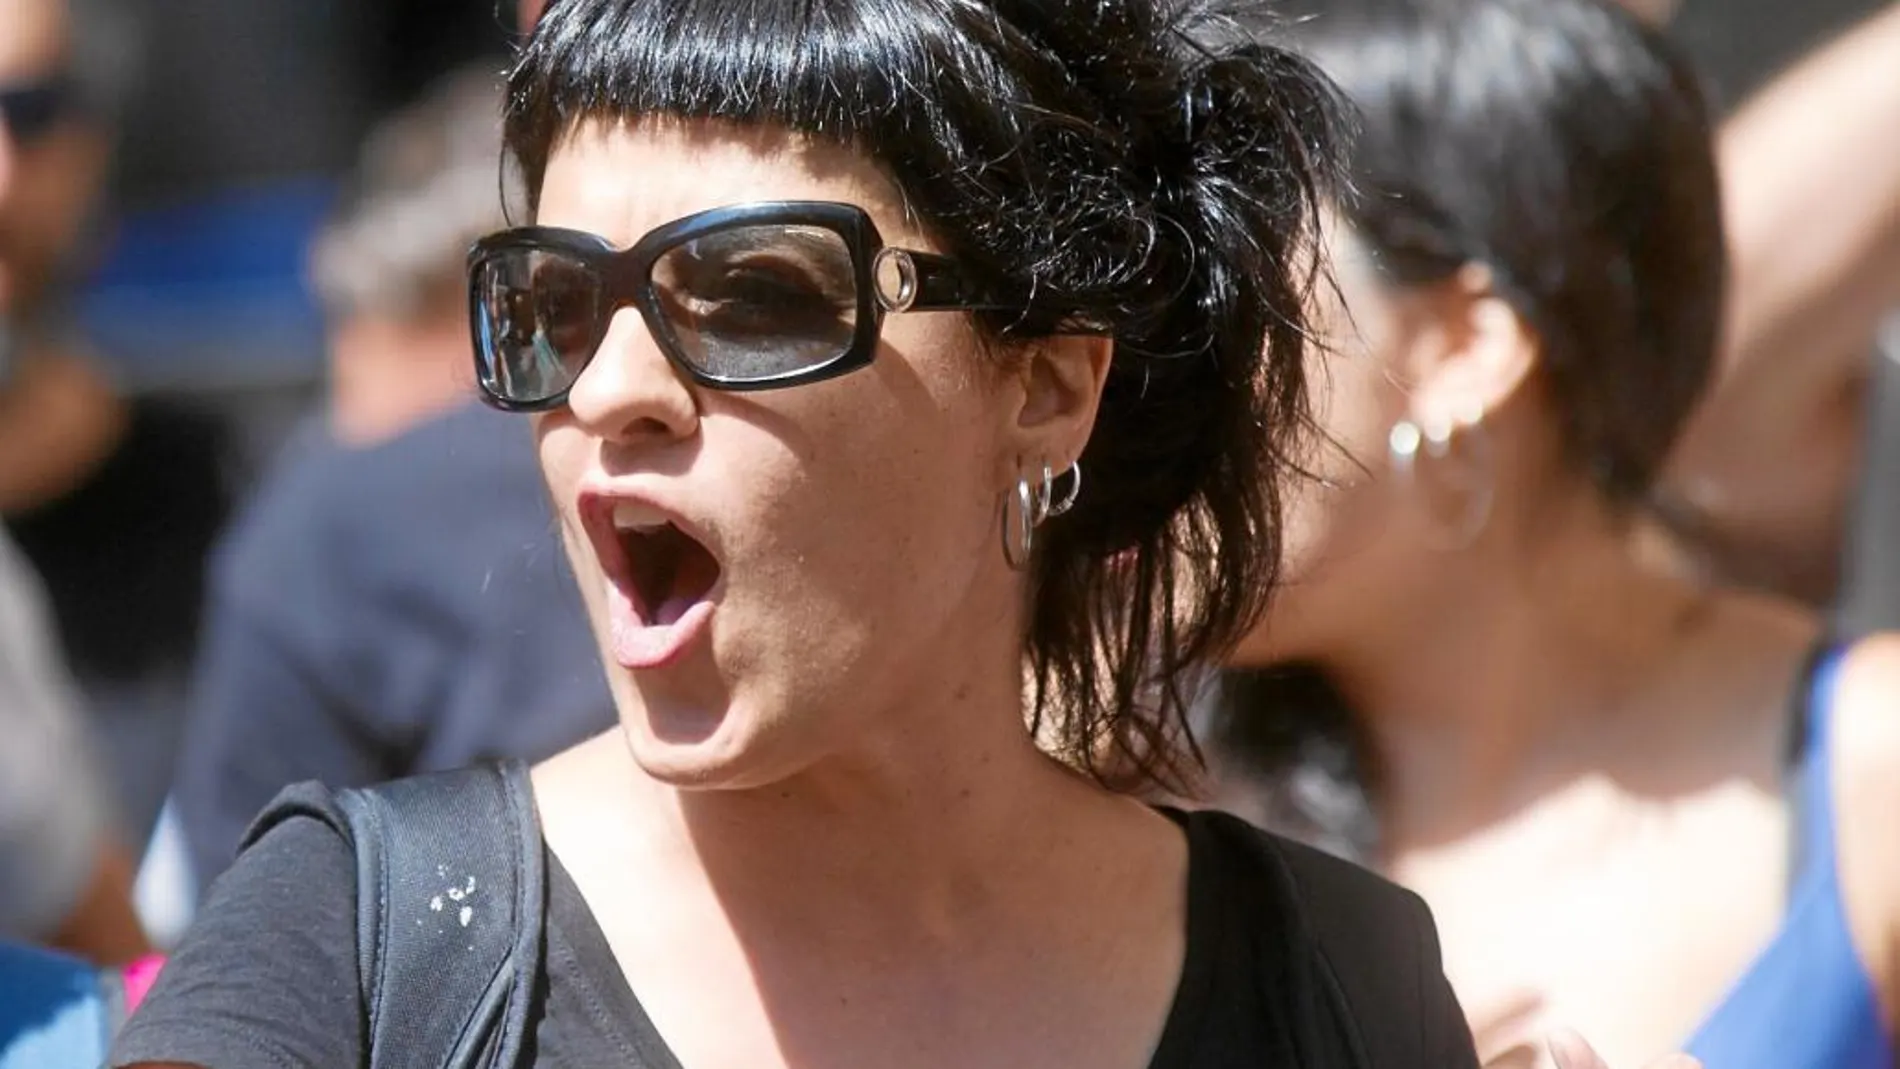 La diputada de la CUP Anna Gabriel, el pasado 31 de julio, protestando ante la Comandancia de la Guardia Civil en Barcelona